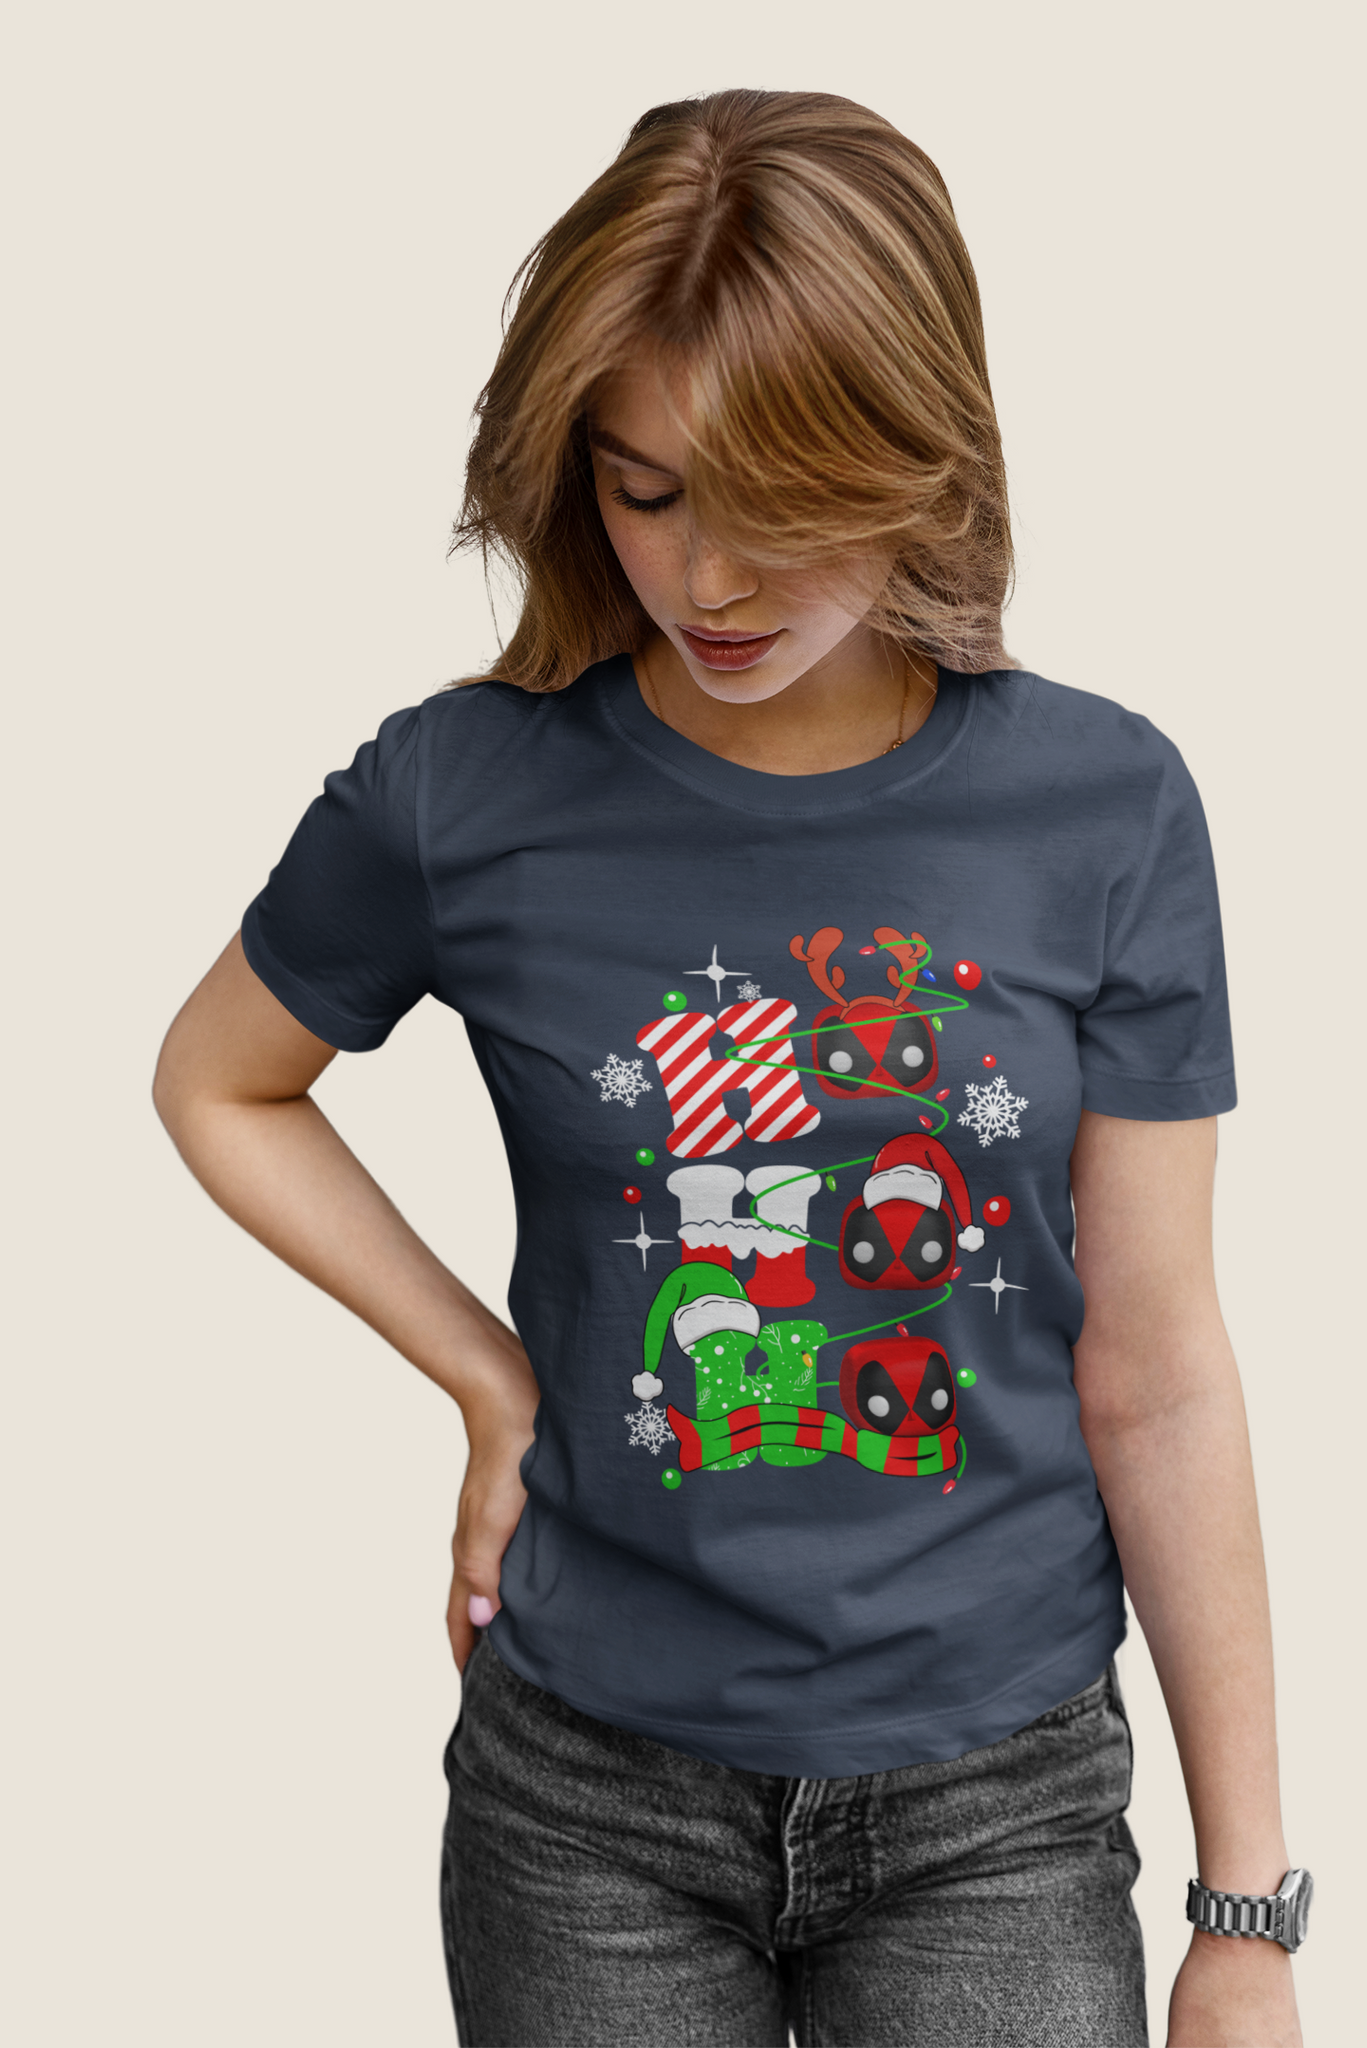 Deadpool T Shirt, Ho Ho Ho Tshirt, Superhero Deadpool T Shirt, Christmas Gifts